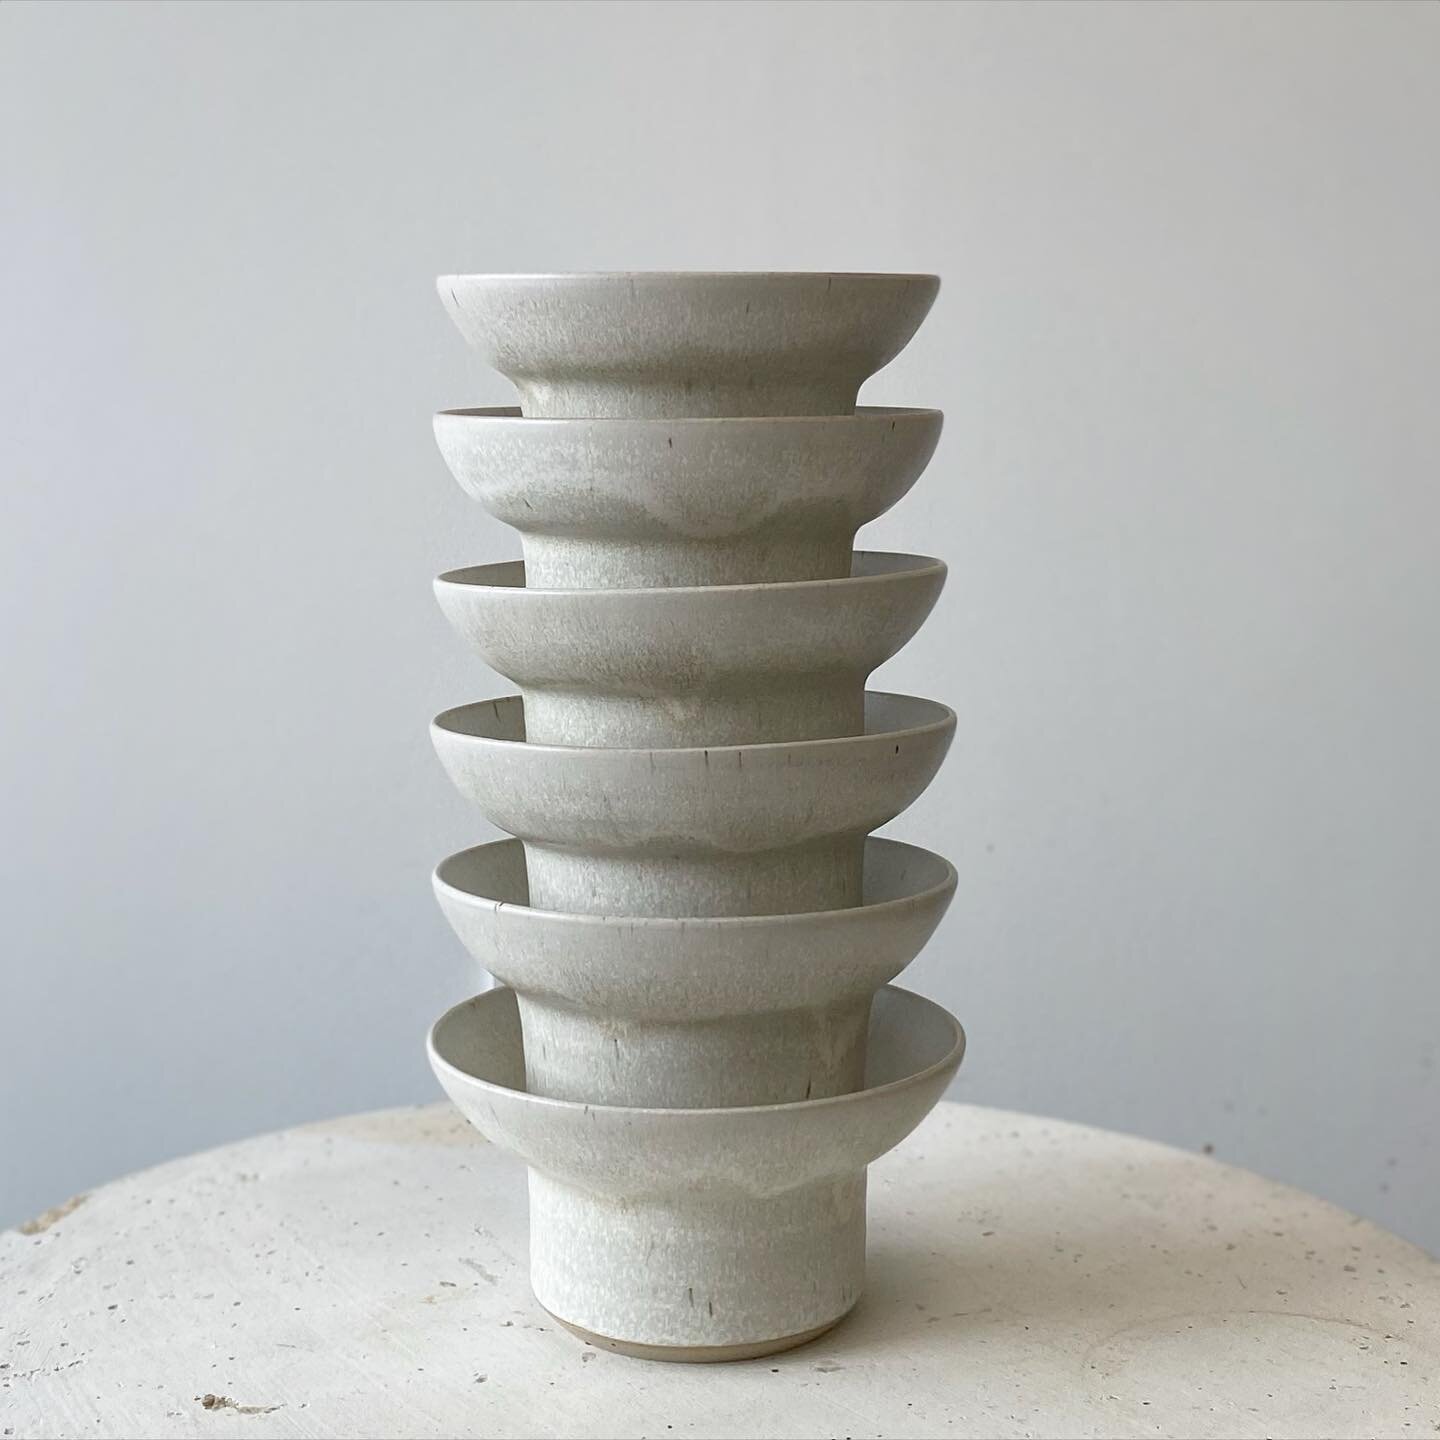 Nouvelle forme, demande particuli&egrave;re 🍶
.
.
.
#artdelatable #vaisselle #stoneware #bowl #whiteglaze #ceramiste #lyon #restaurantware #ceramics #poterie